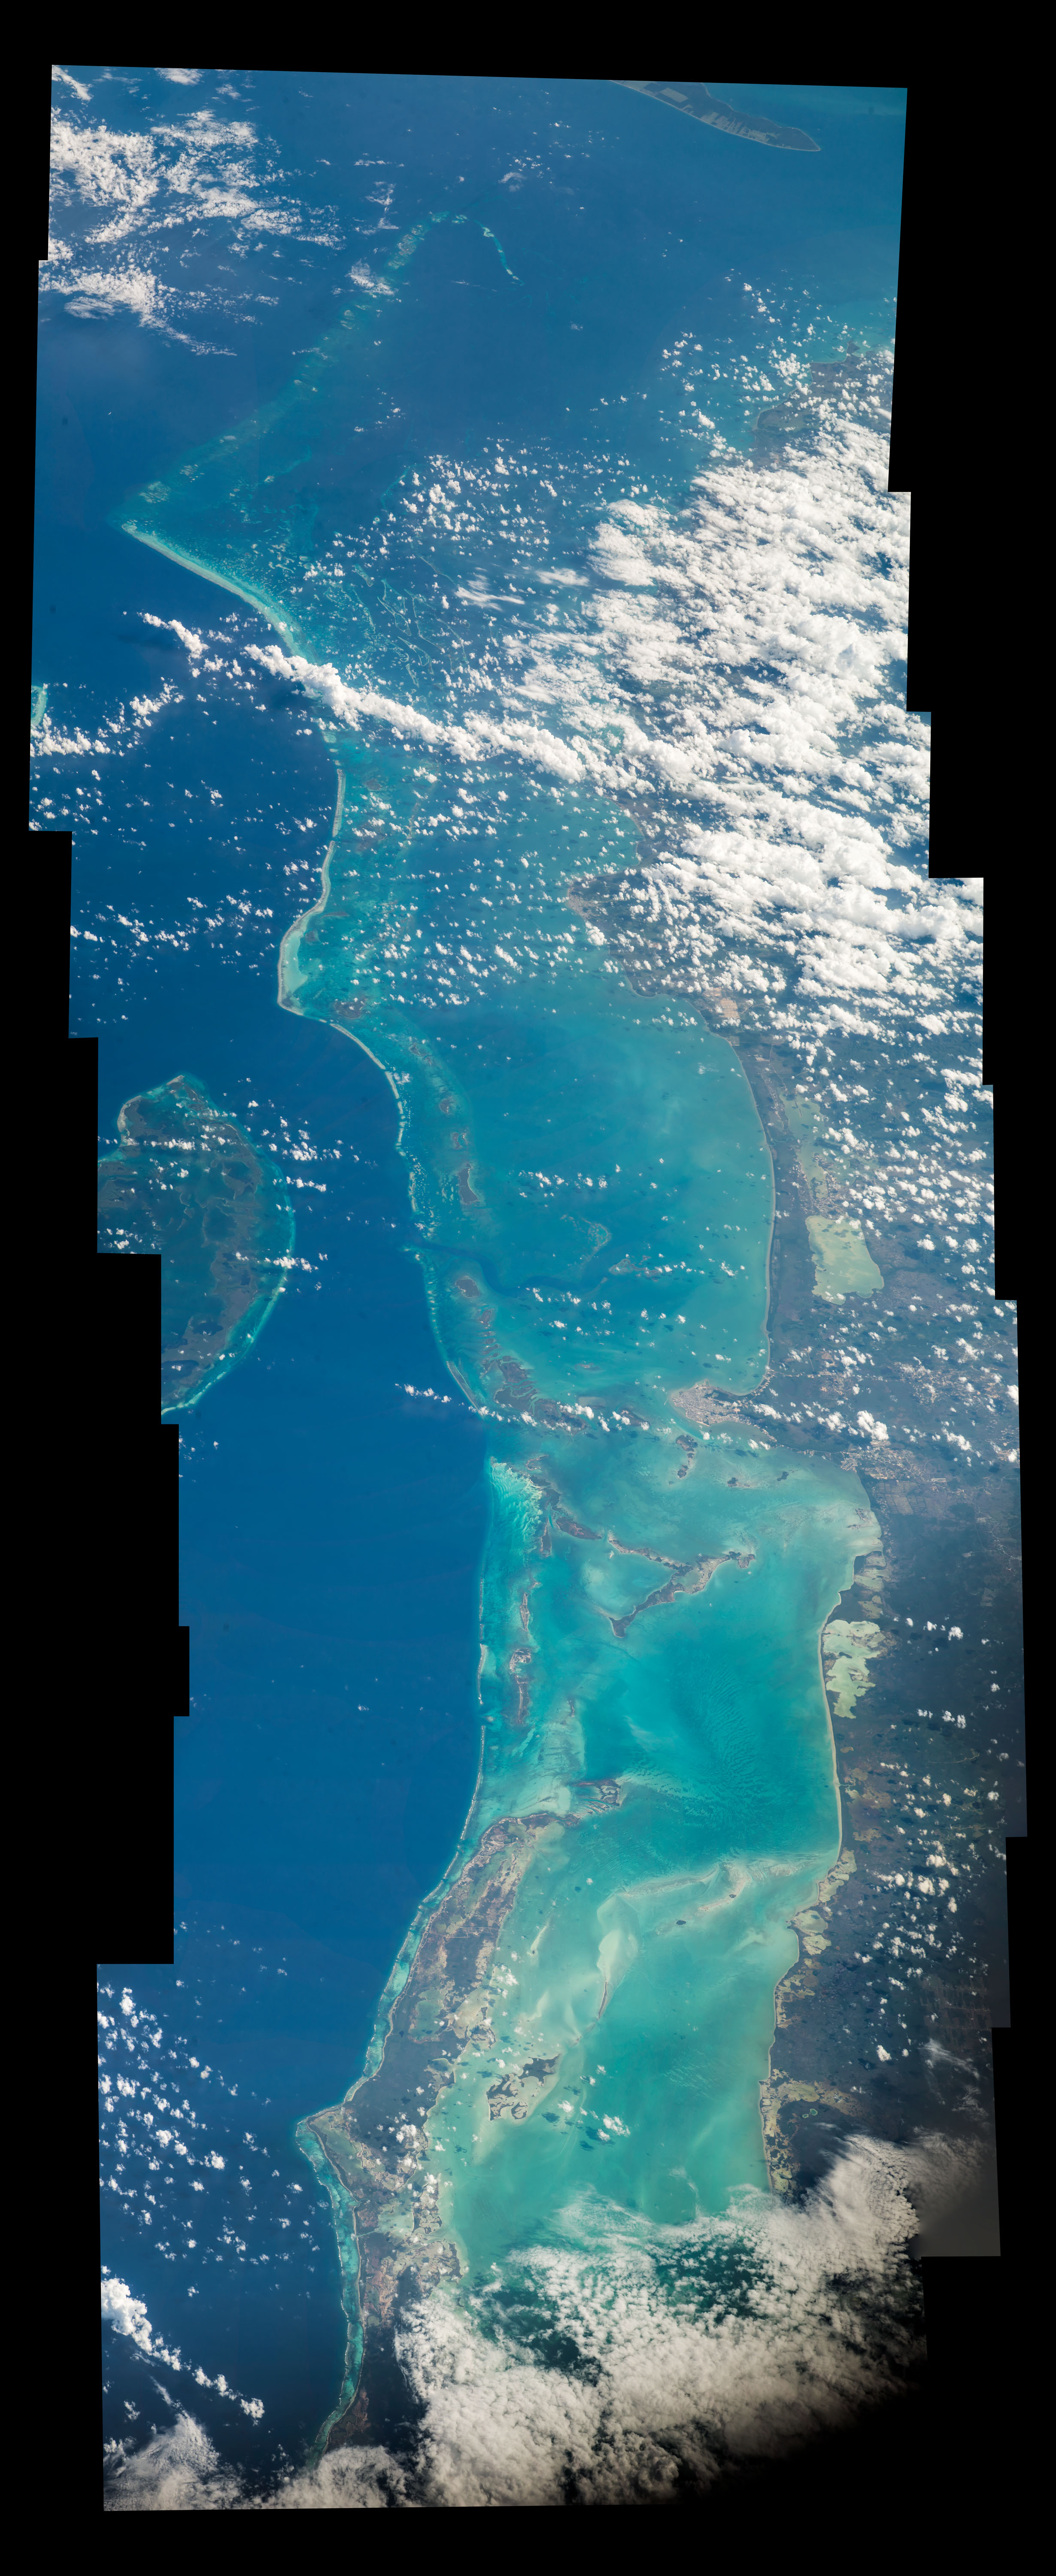 Belize Barrier Reef Reserve System